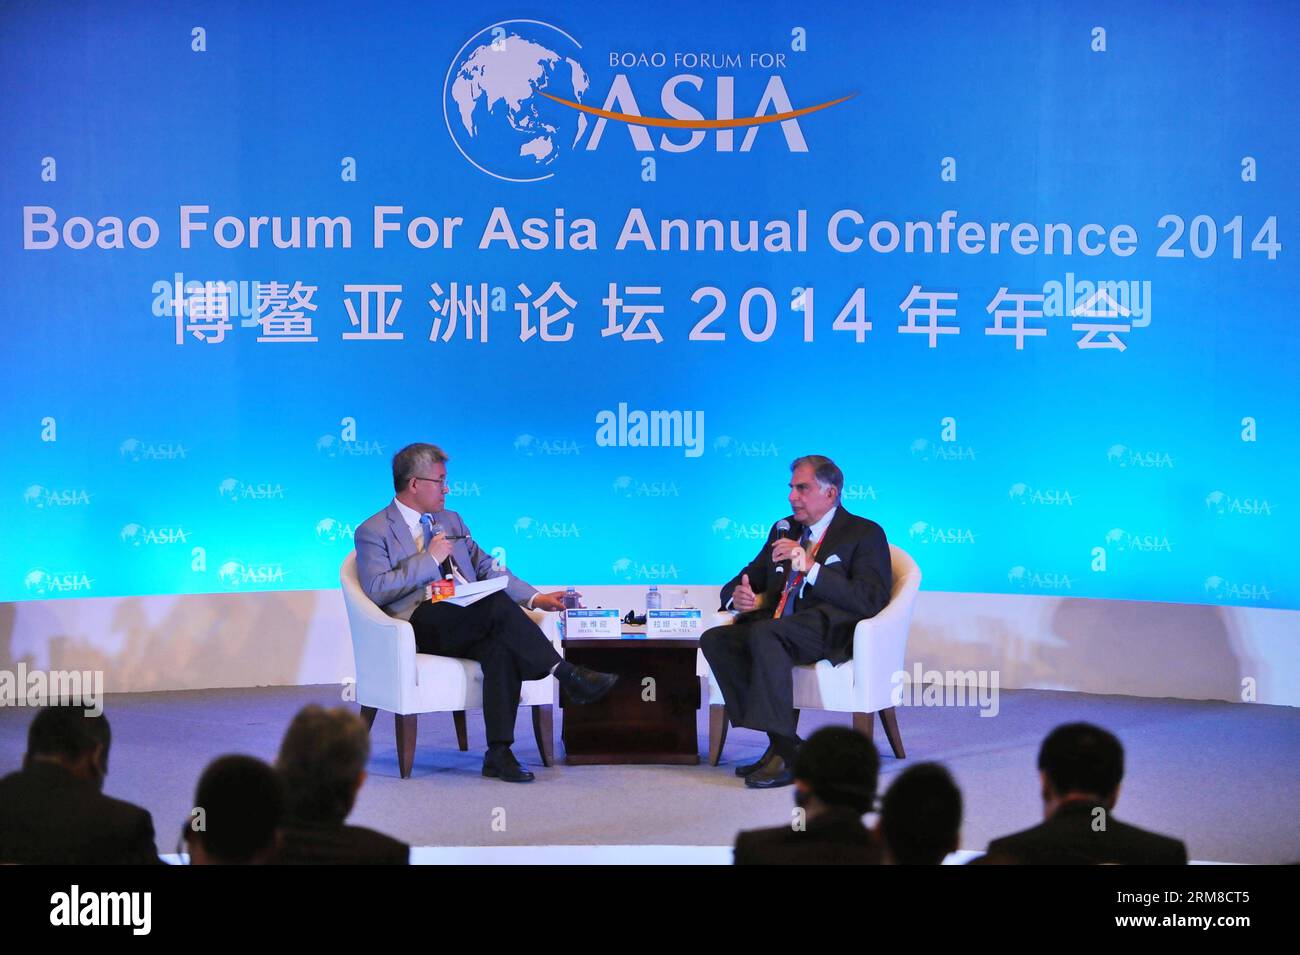 (140409) -- BOAO, 9 avril 2014 (Xinhua) -- Zhang Weiying (L), économiste professionnel de l'Université de Pékin, et Ratan Tata, président émérite de l Inde Tata Sons Ltd., assistent au dialogue du Vigor de l économie indienne et de la compétitivité des entreprises indiennes lors de la conférence annuelle 2014 du Boao Forum for Asia (BFA) à Boao, dans la province de Hainan du sud de la Chine, le 9 avril 2014. (Xinhua/Chen Yehua) (wf) CHINA-BOAO-BFA 2014-ZHANG WEIYING-TATA(CN) PUBLICATIONxNOTxINxCHN Boao avril 9 2014 XINHUA Zhang l Economics de l'Université de Beijing et Ratan Tata Président émérite de l'Inde S Tata Sons Ltd assistent à la Banque D'Images